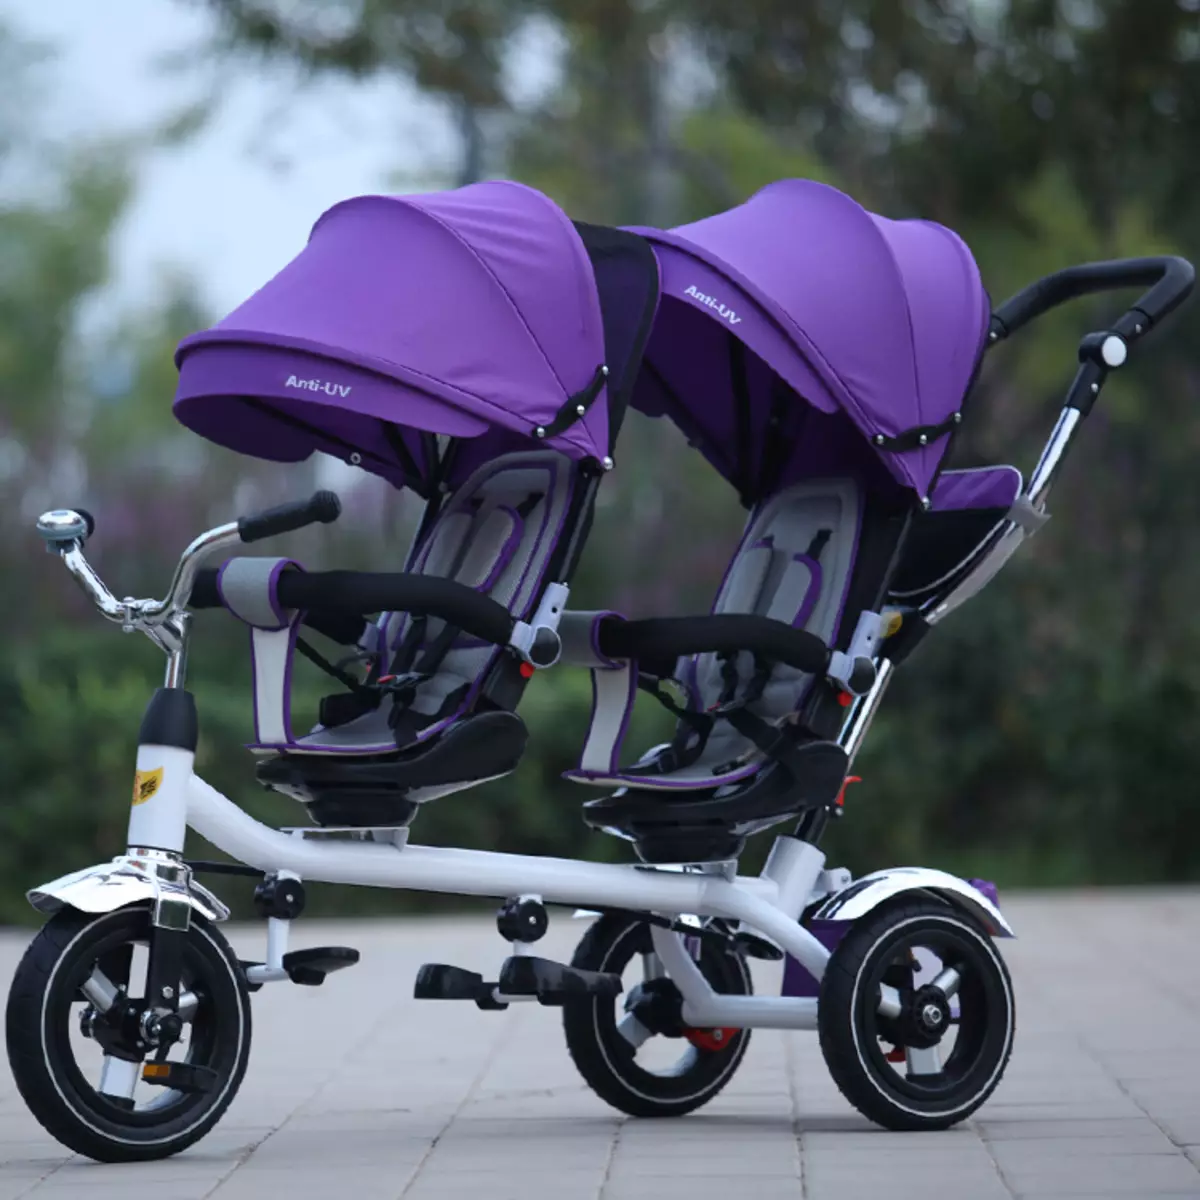 Fahrrad für Zwillinge: Doppeltrycle von Kindern mit Twins-Griff, Models mit zwei Stühlen für Kinder verschiedener Altersgruppen 8505_2